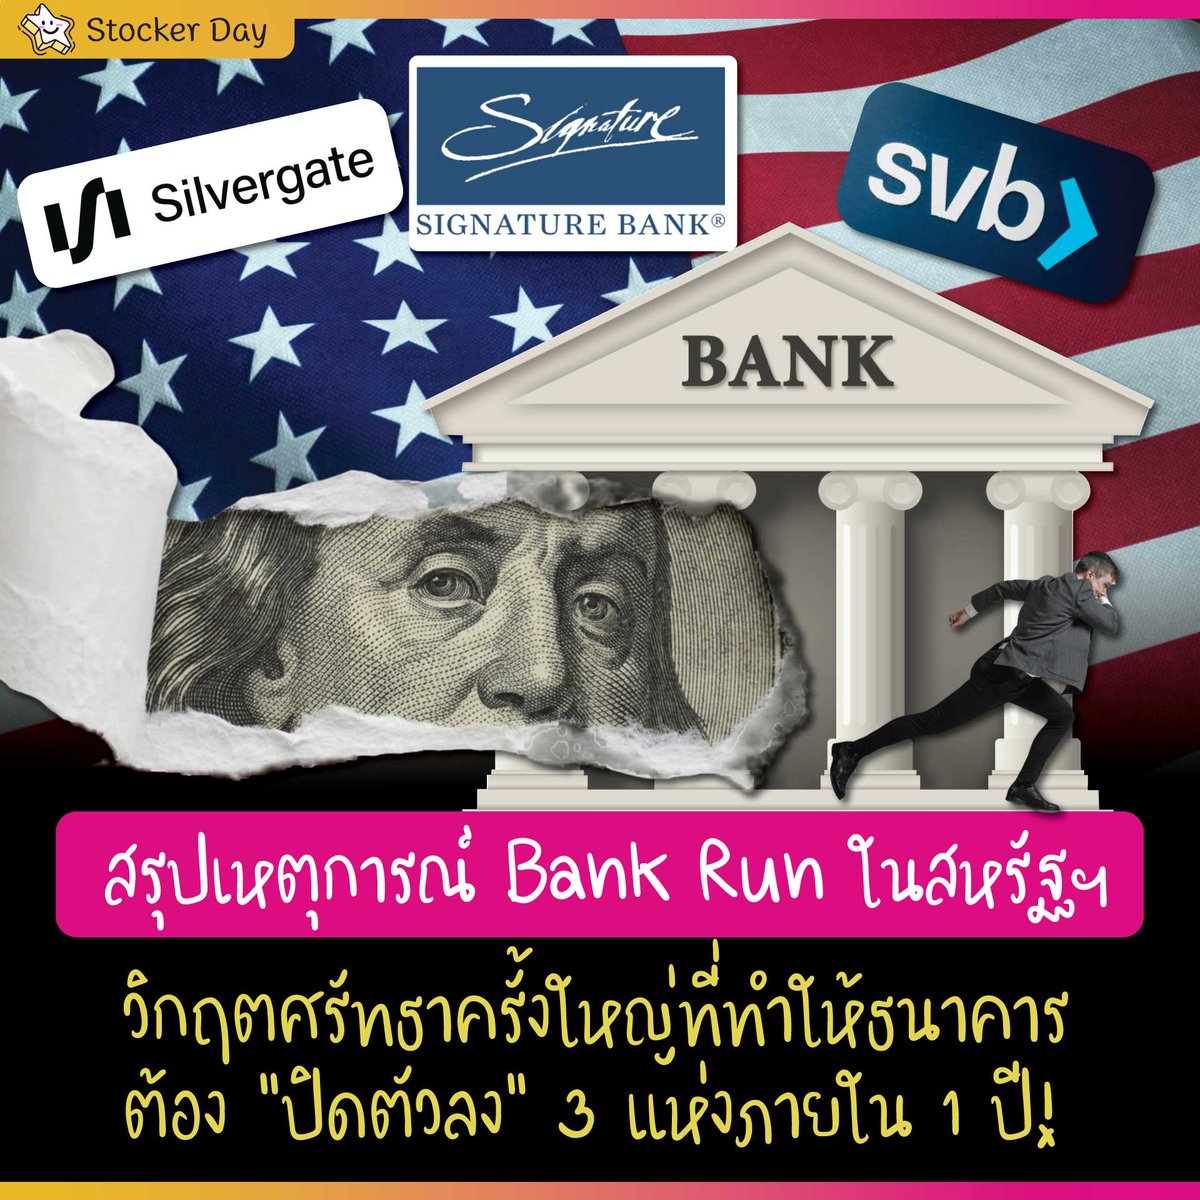 สรุปเหตุการณ์ Bank Run ในสหรัฐฯ วิกฤตศรัทธาครั้งใหญ่ที่ทำให้ธนาคารต้อง “ปิดตัวลง” 3 แห่งภายใน 1 ปี !

#SiliconVallyBank  #Silverbank #SignatureBank #SilvergateCapital